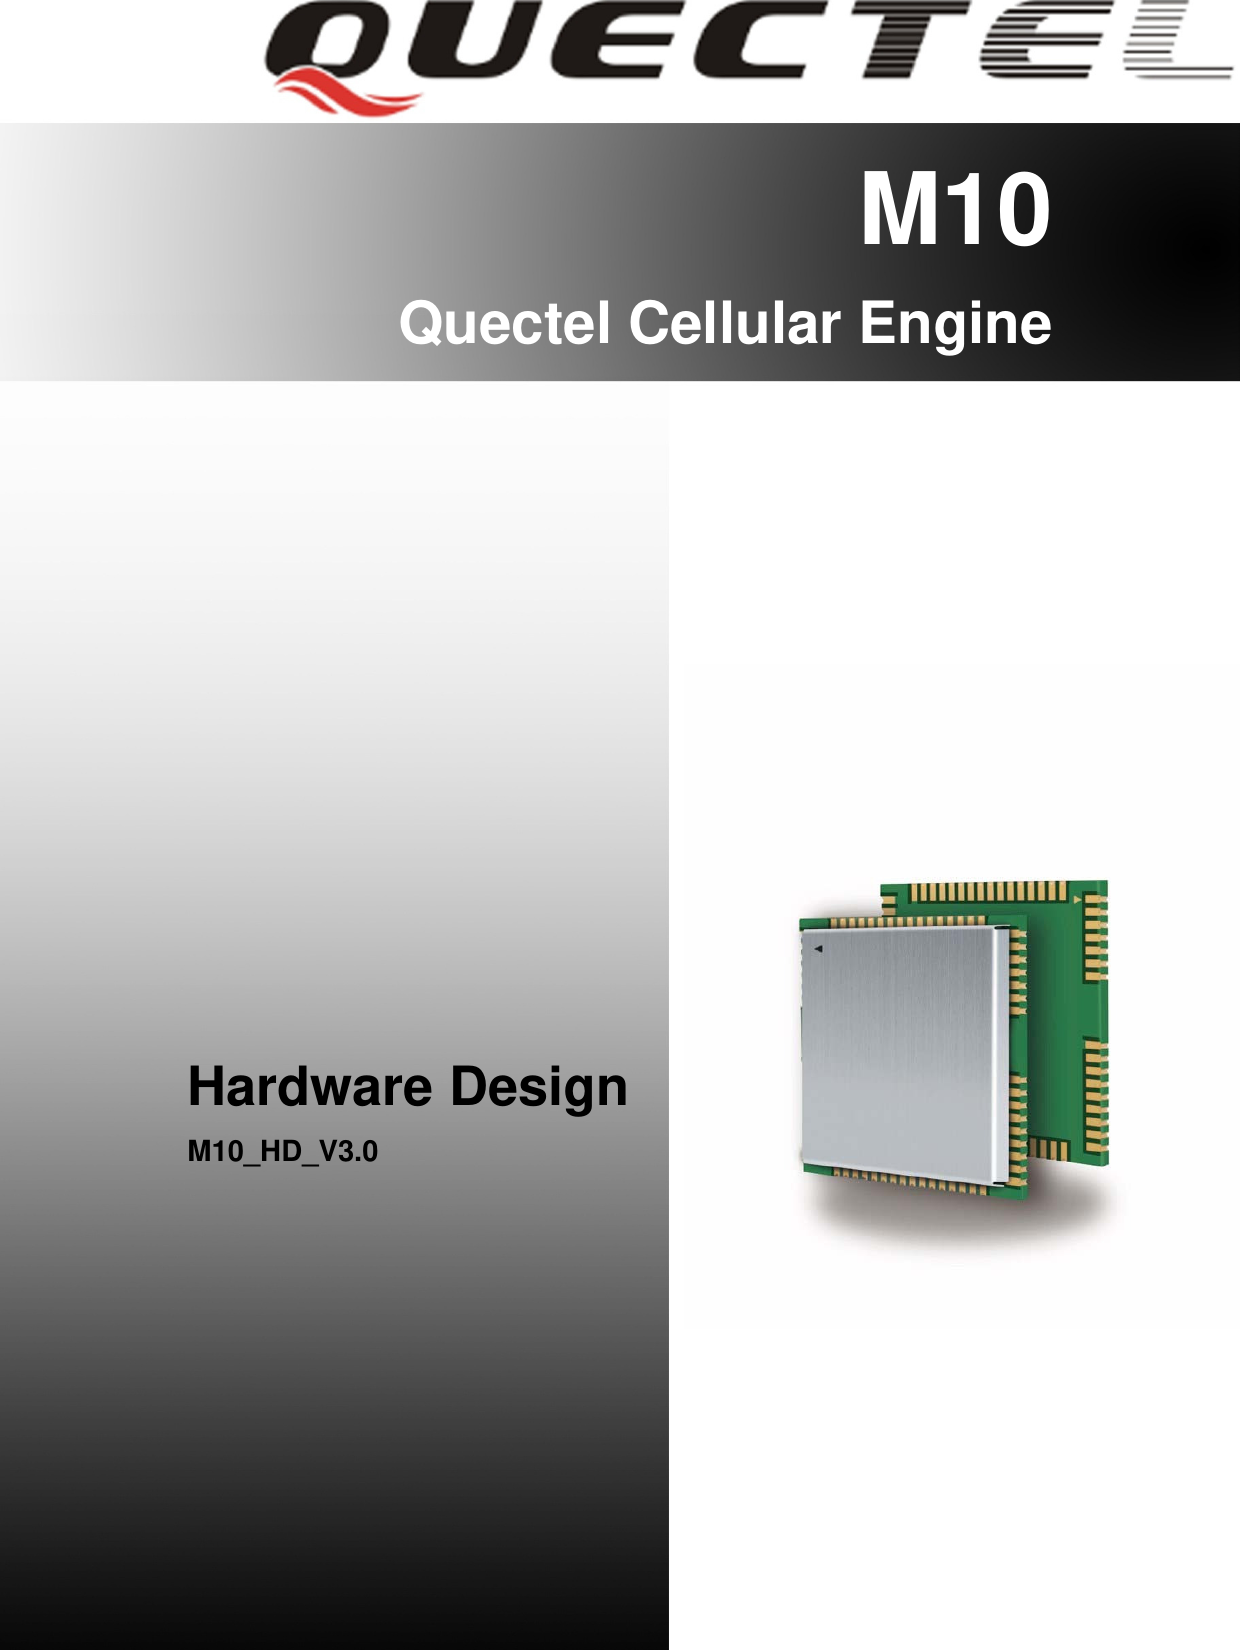    M10 Quectel Cellular Engine                  Hardware Design M10_HD_V3.0         